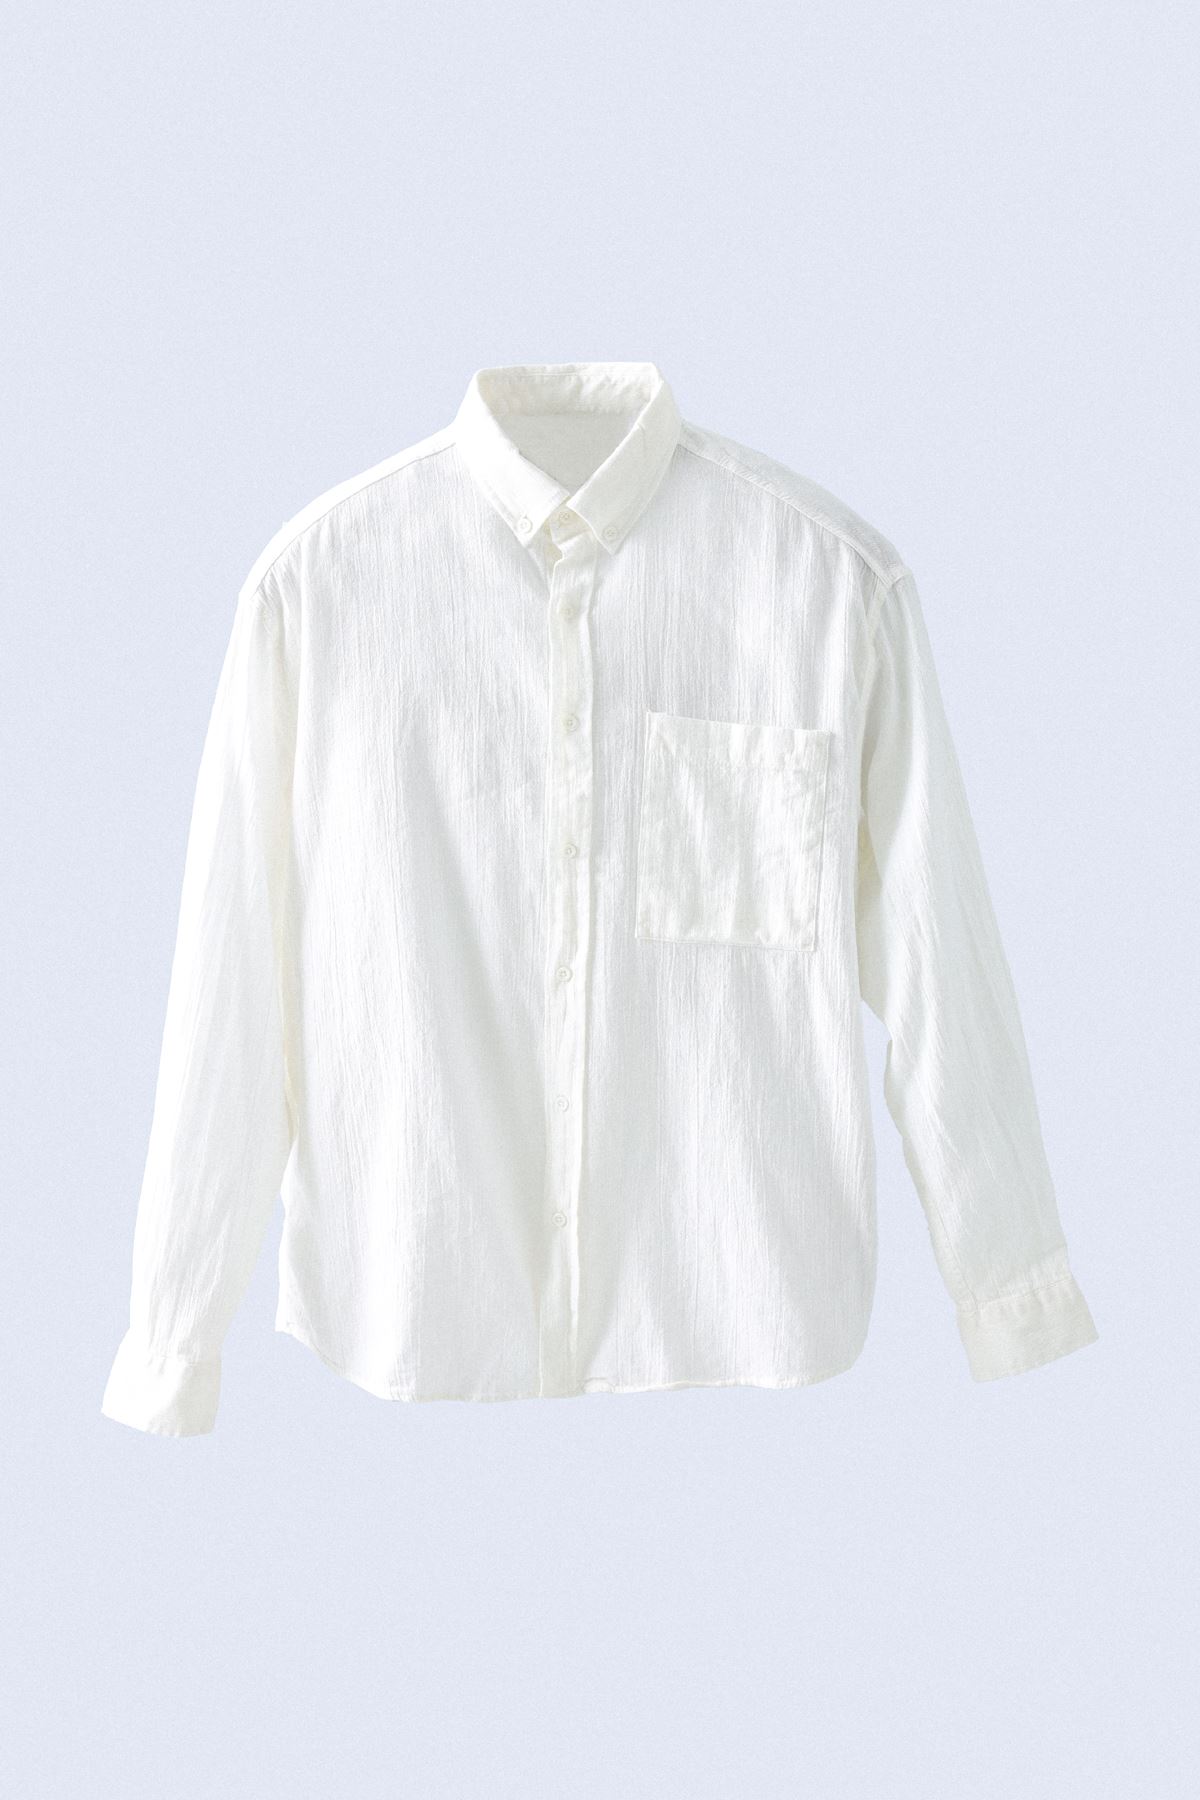 Beyaz Kırınkıl Gömlek